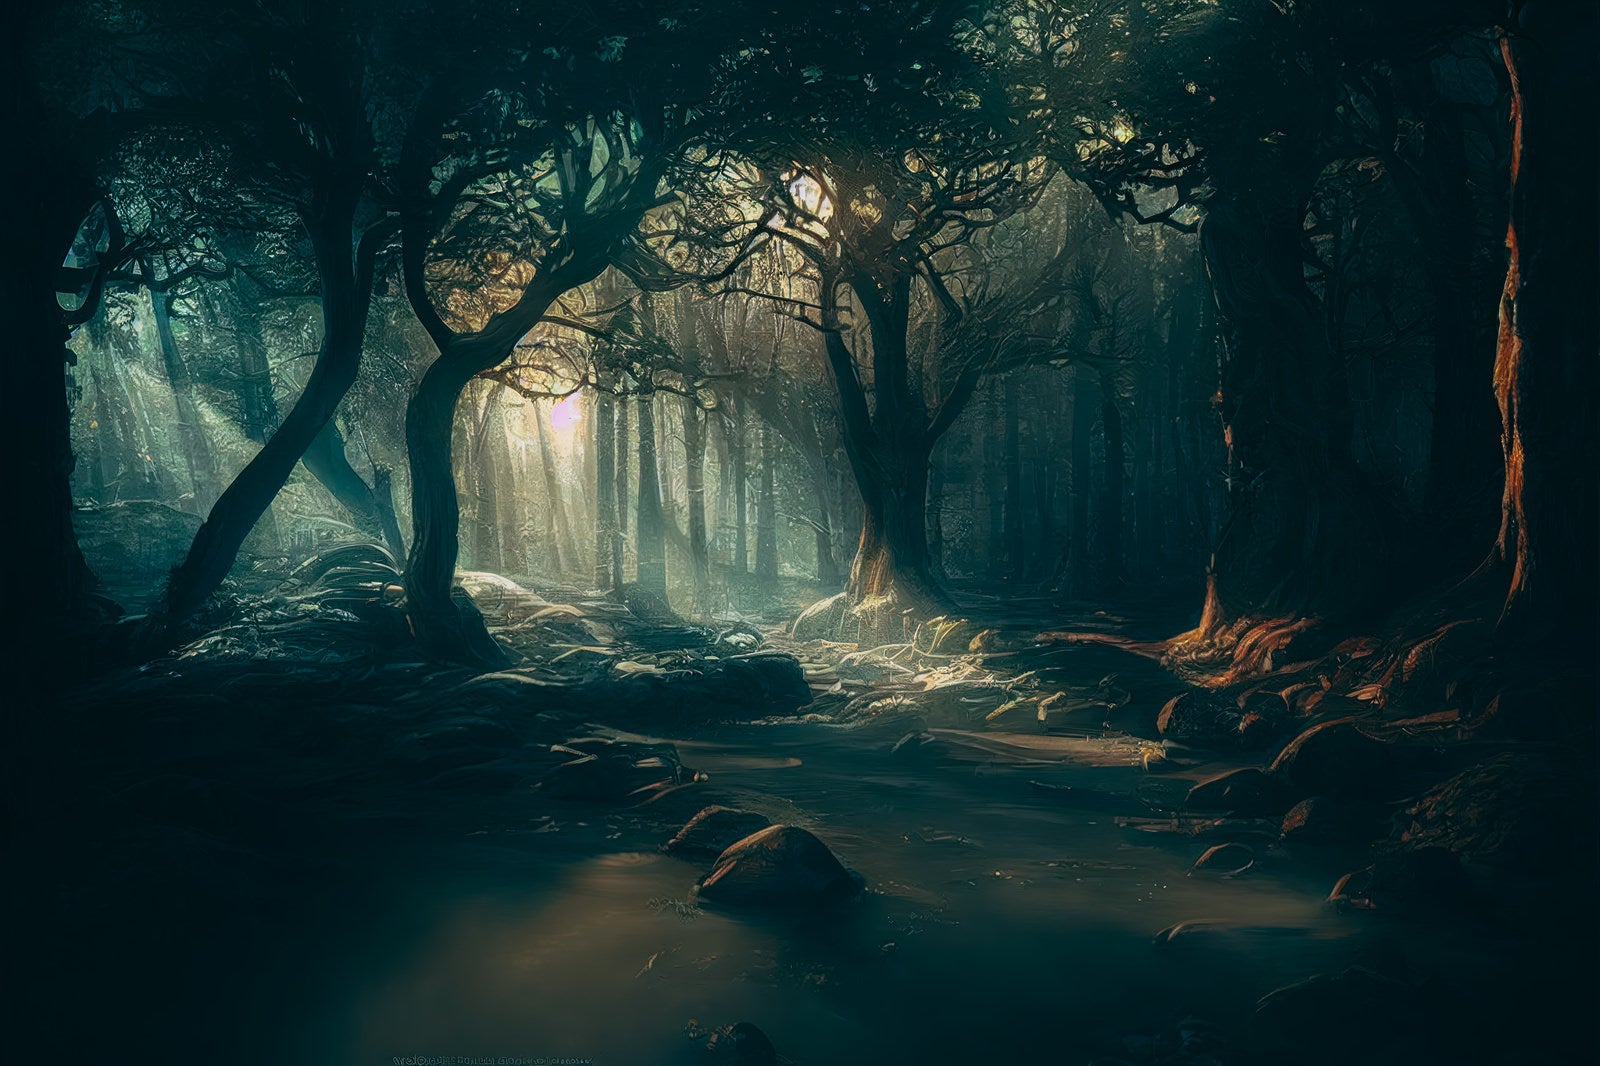 「妖精の森に差し込む光」の写真